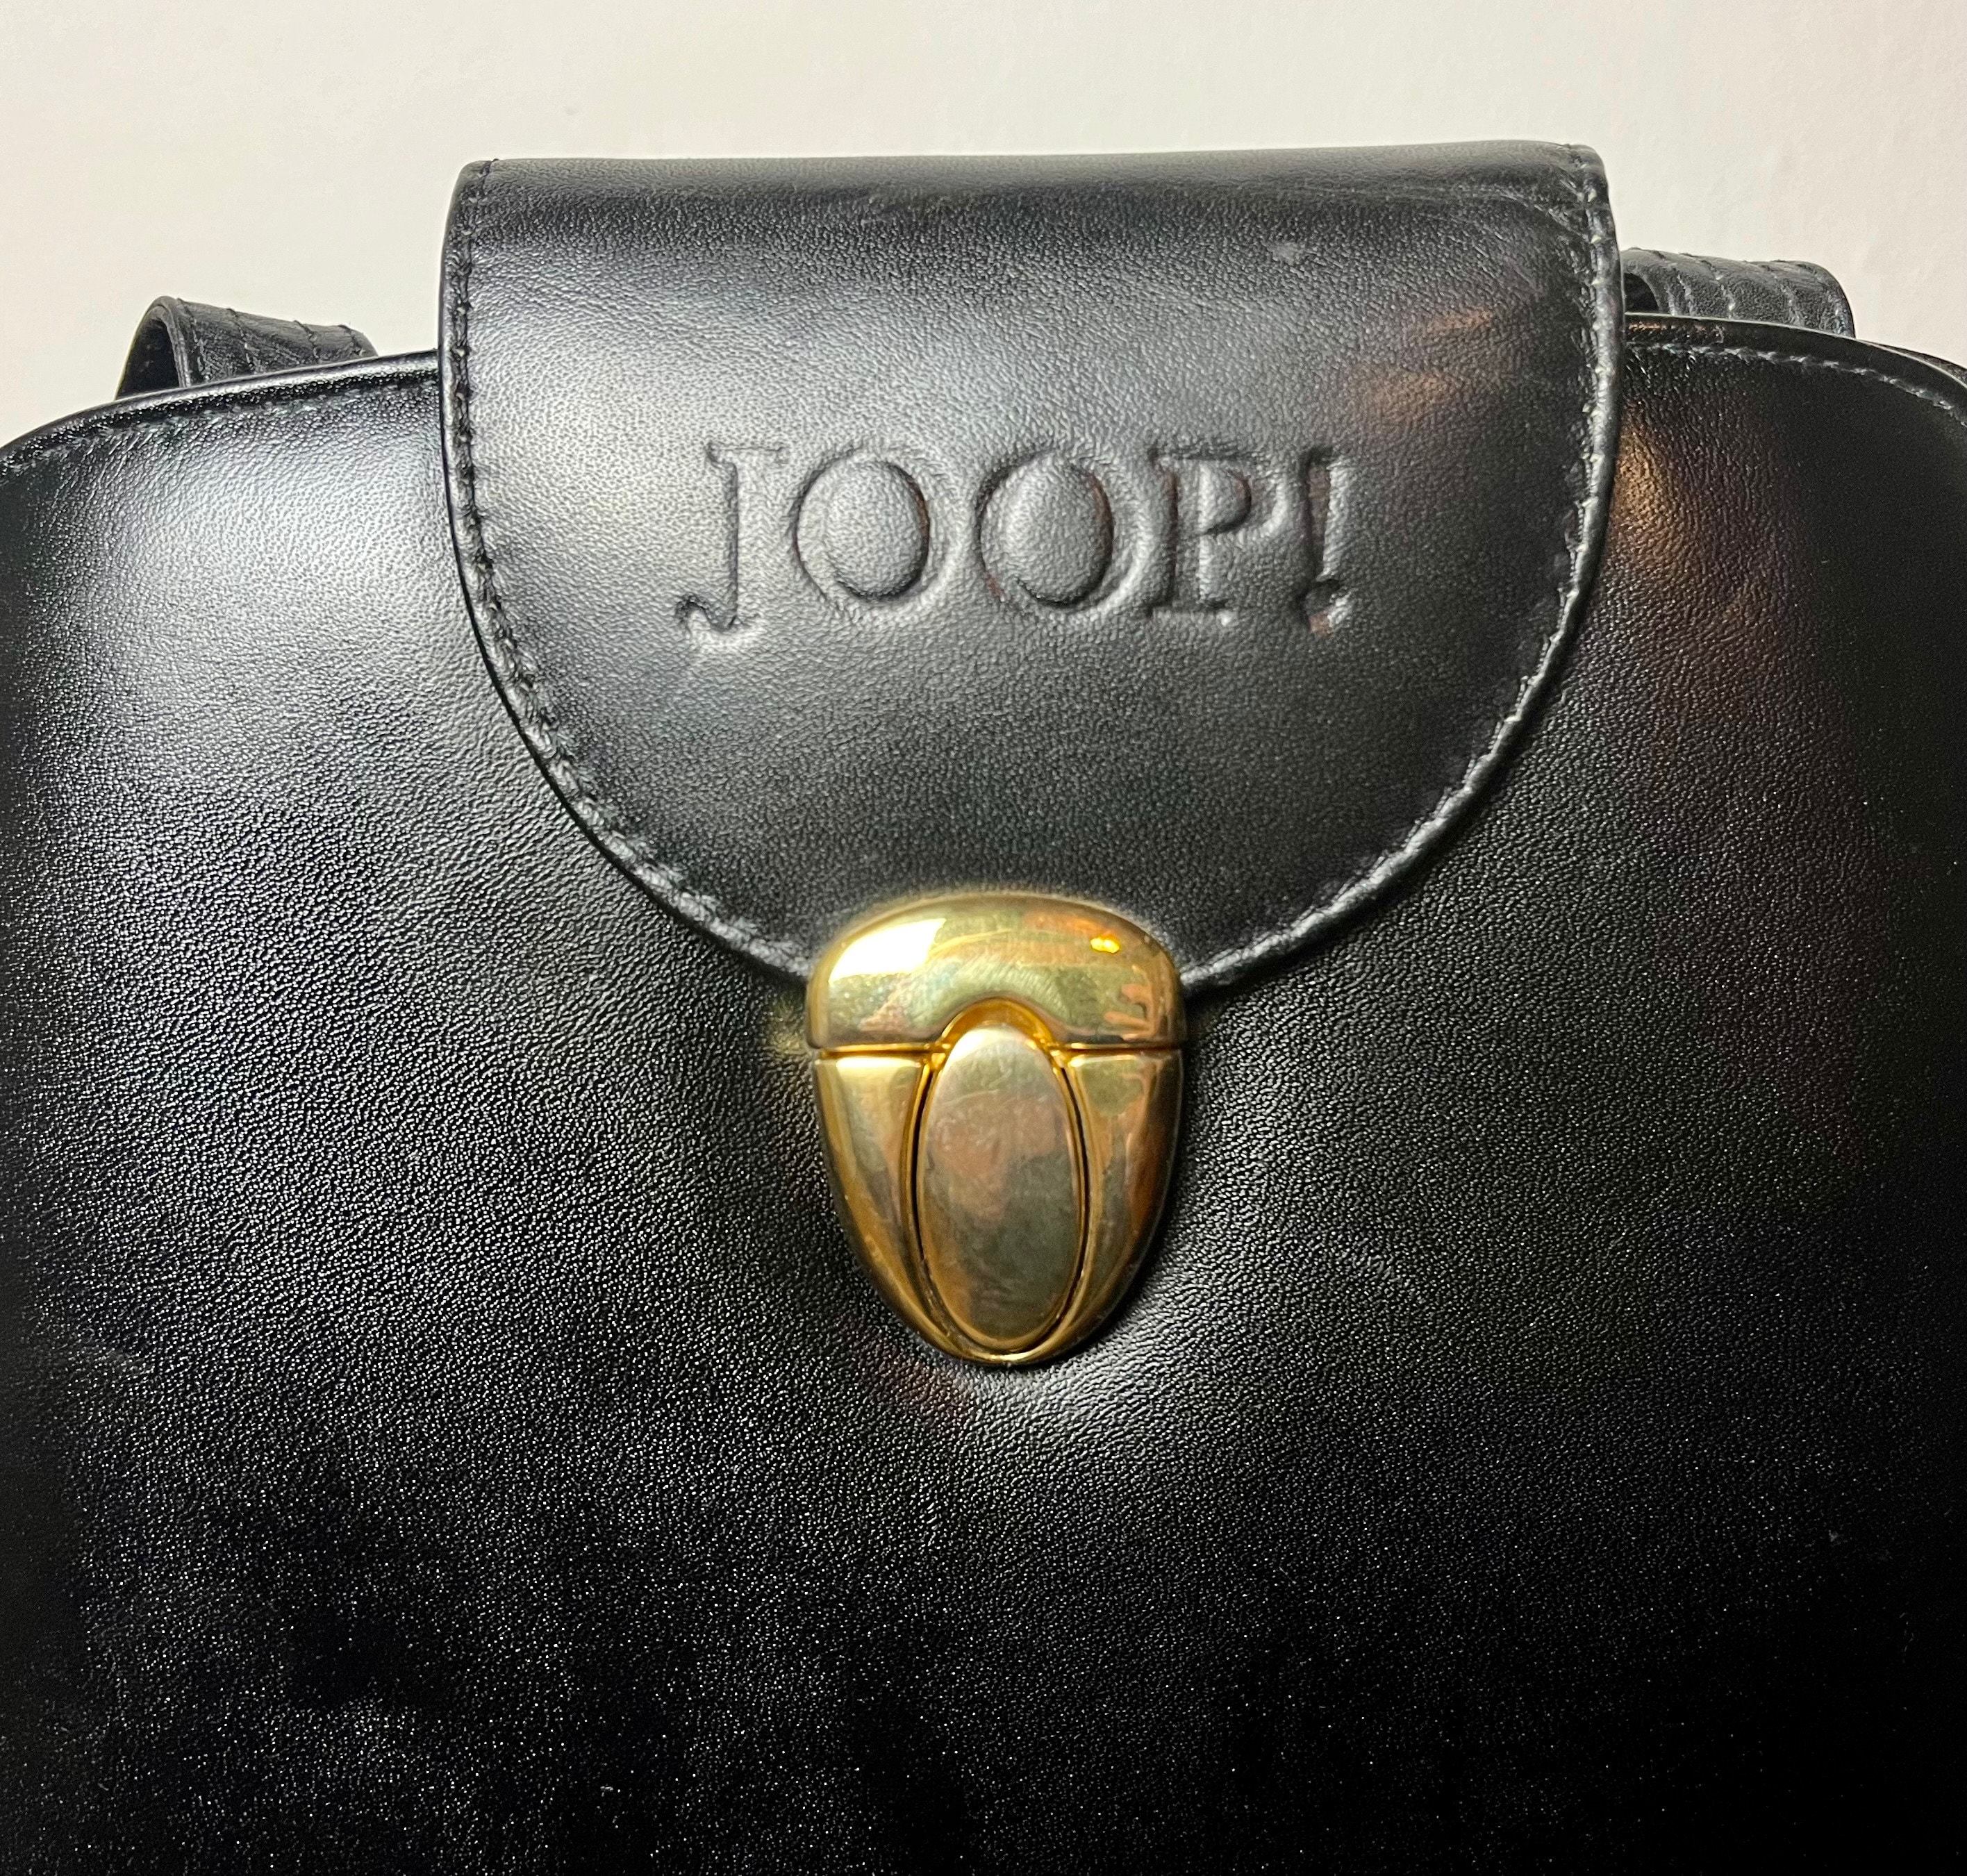 Joop Bag Vintage - Etsy